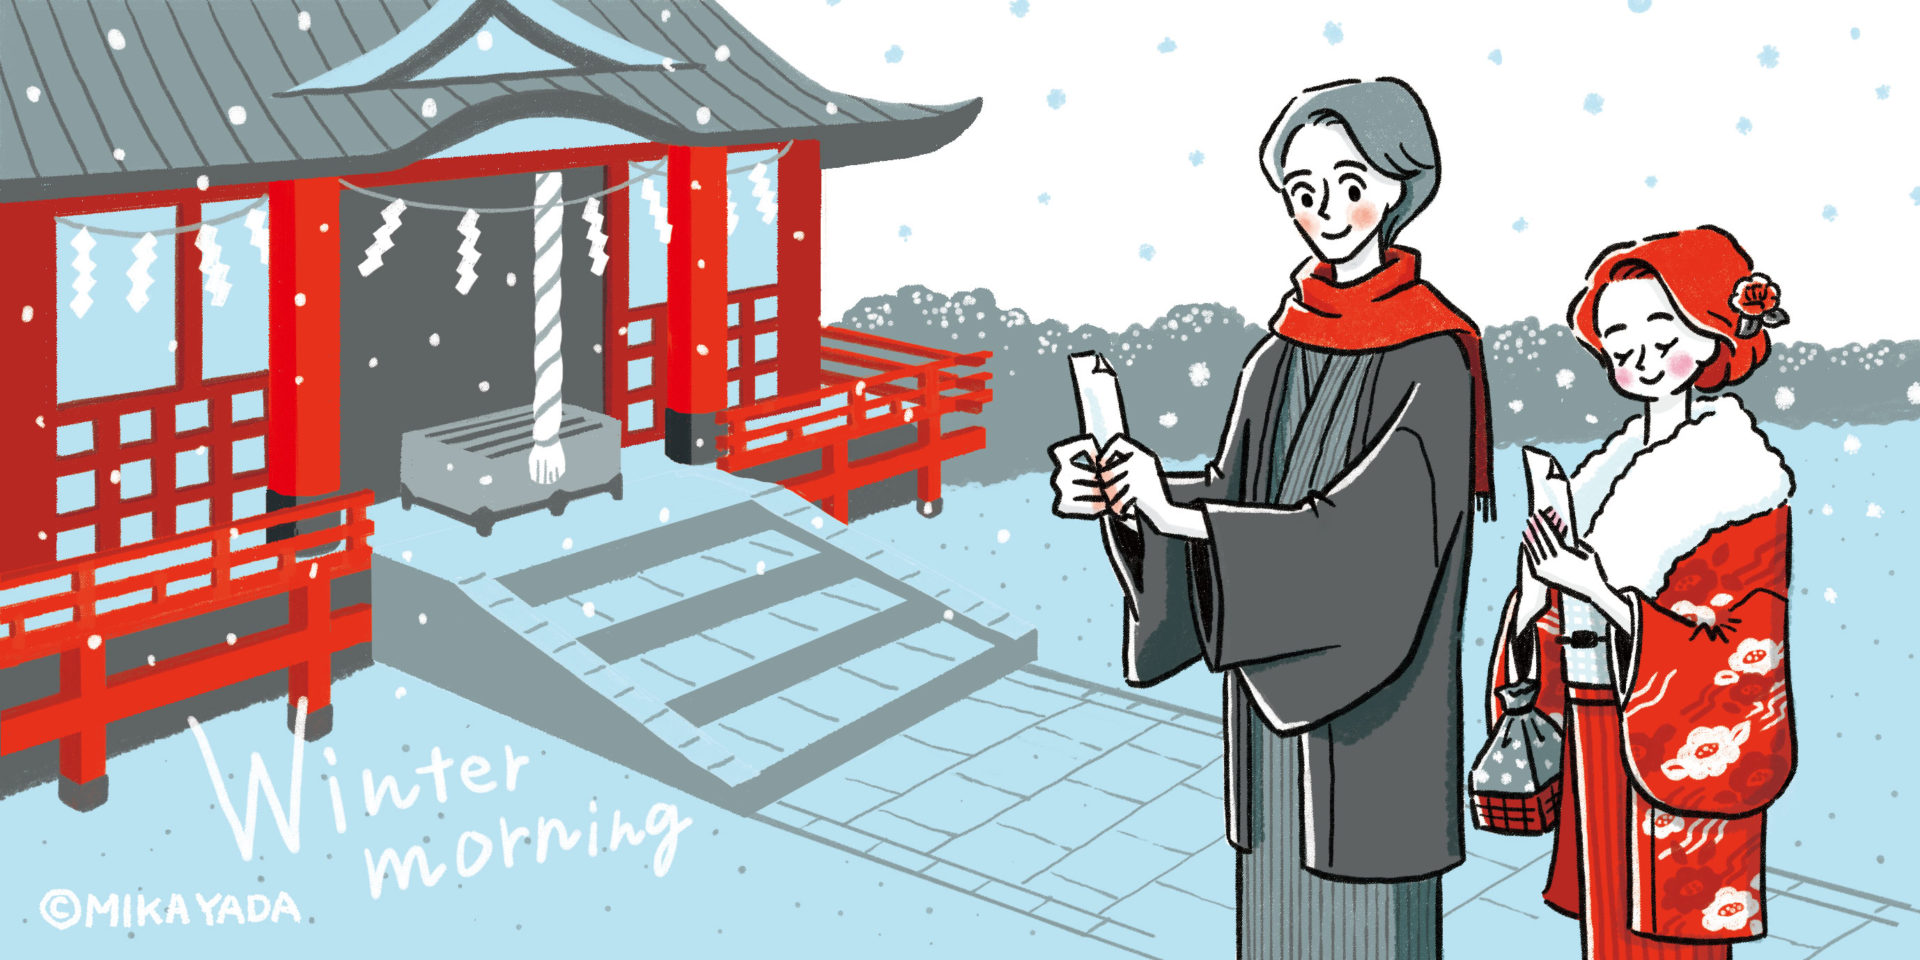 Winter morning　冬の朝のイラストイメージ。 お正月、初詣の朝に神社でおみくじを見ているカップルのイラスト。